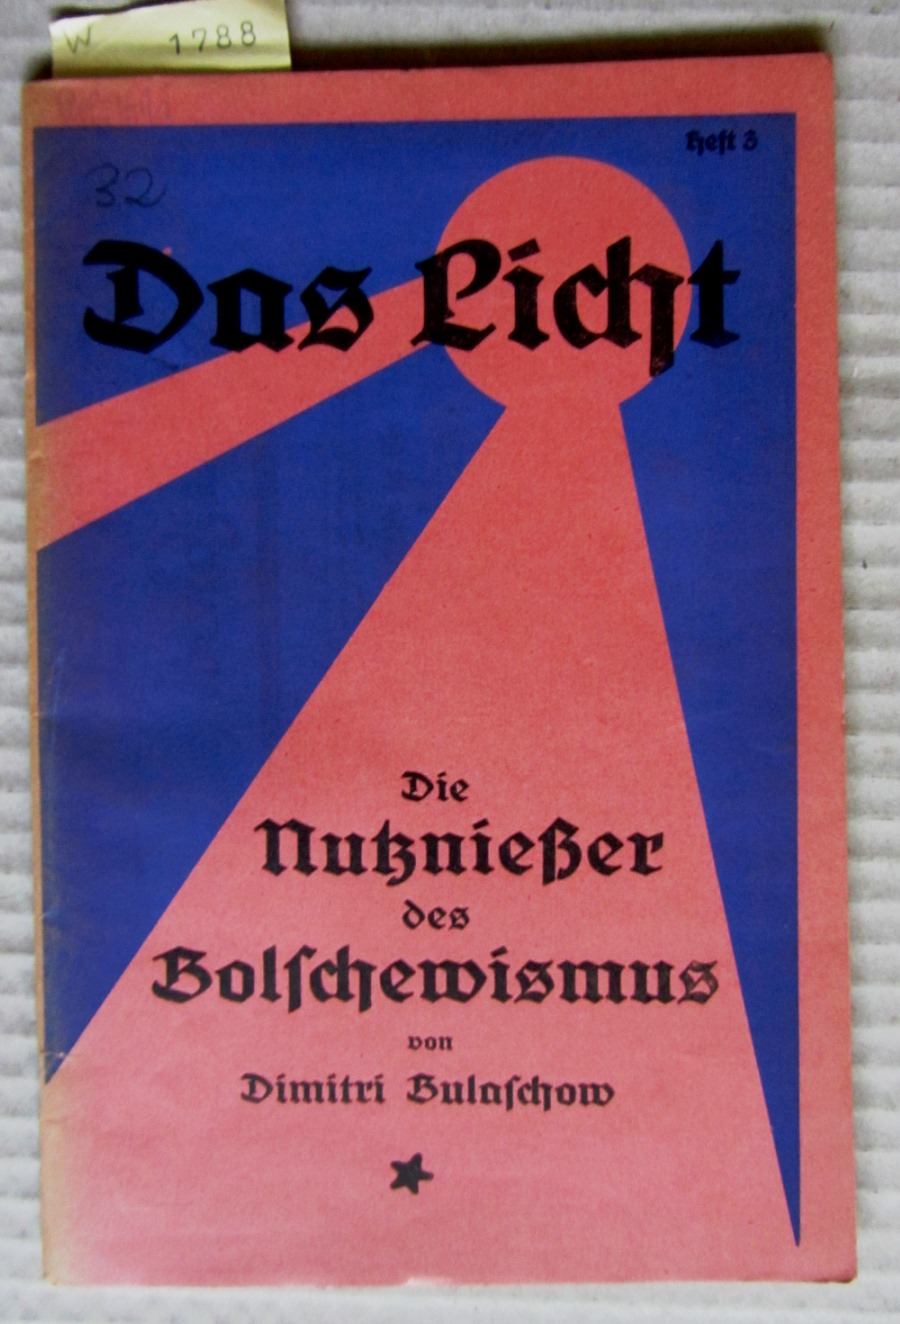 Bulaschow, Dimitri:  Die Nutznießer des Bolschewismus. ("Das Licht", Heft 3) 